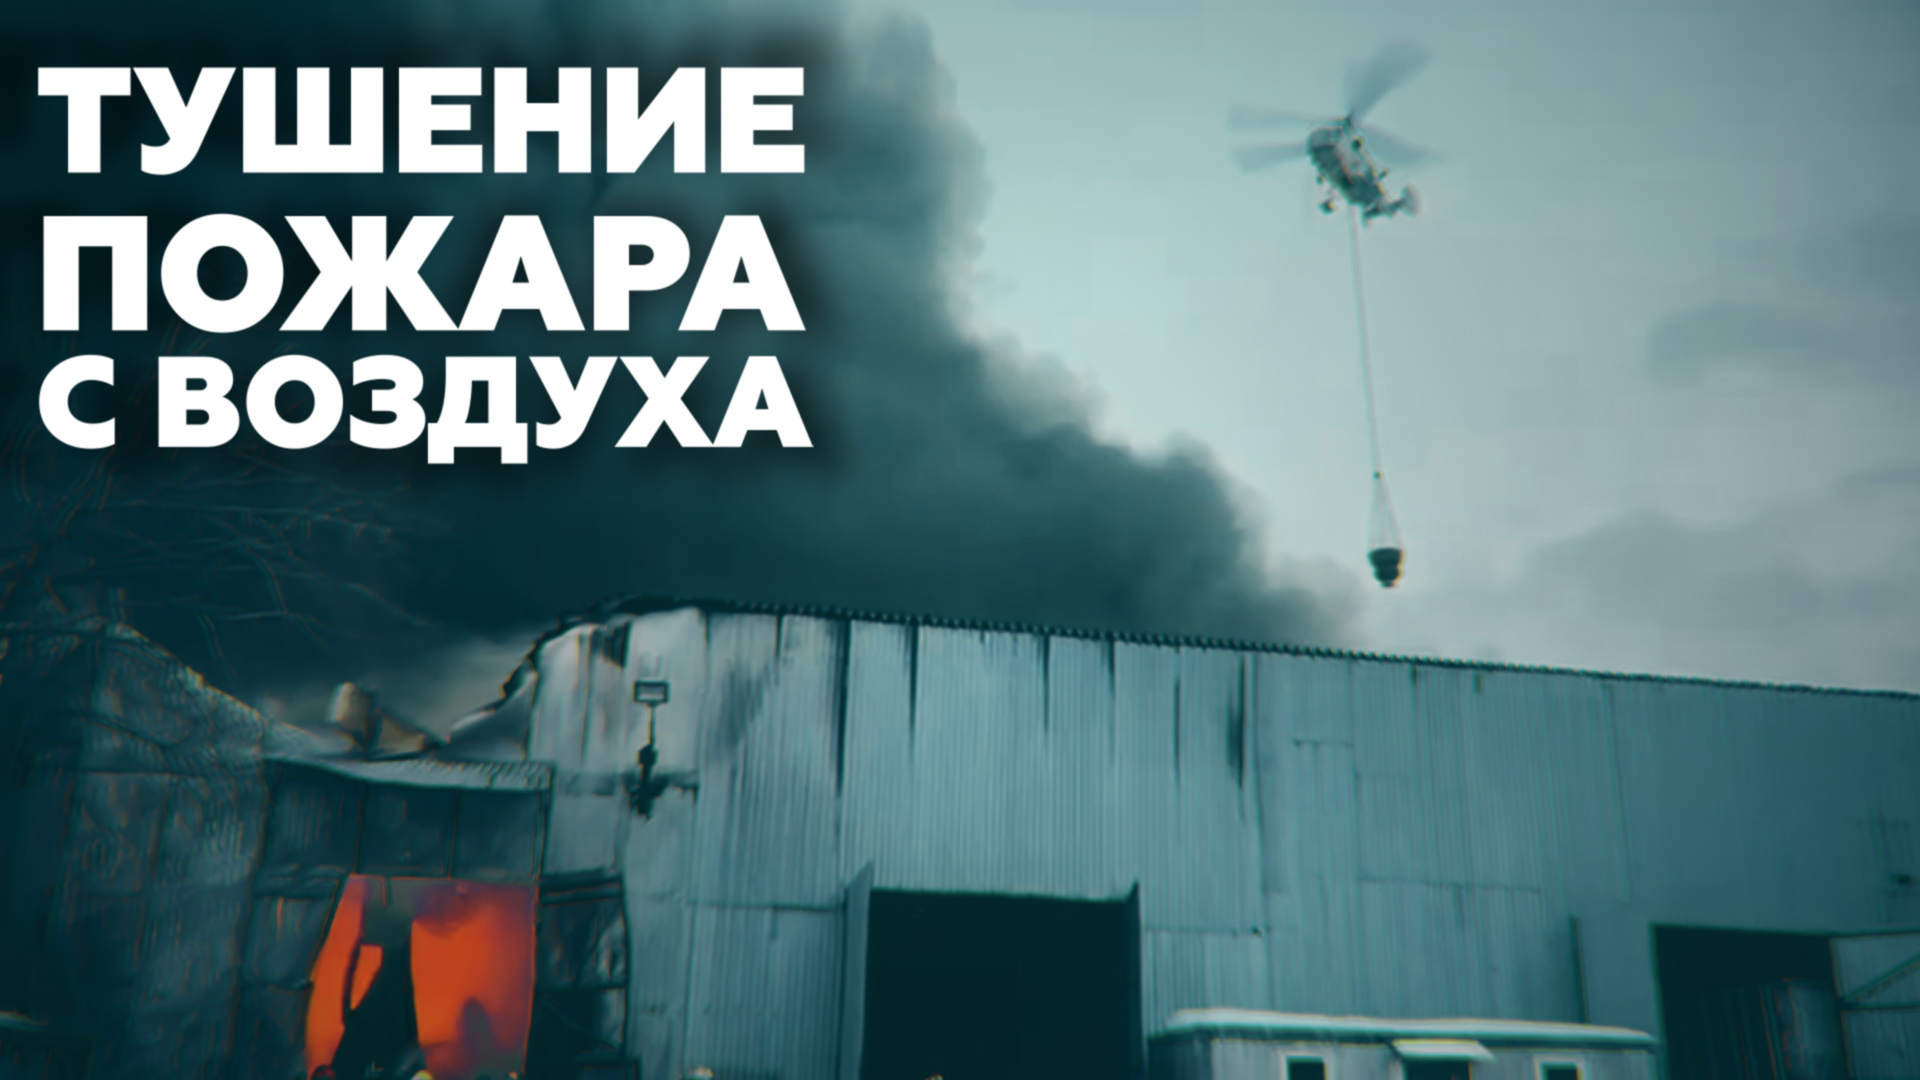 Видео тушения пожара на Варшавском шоссе